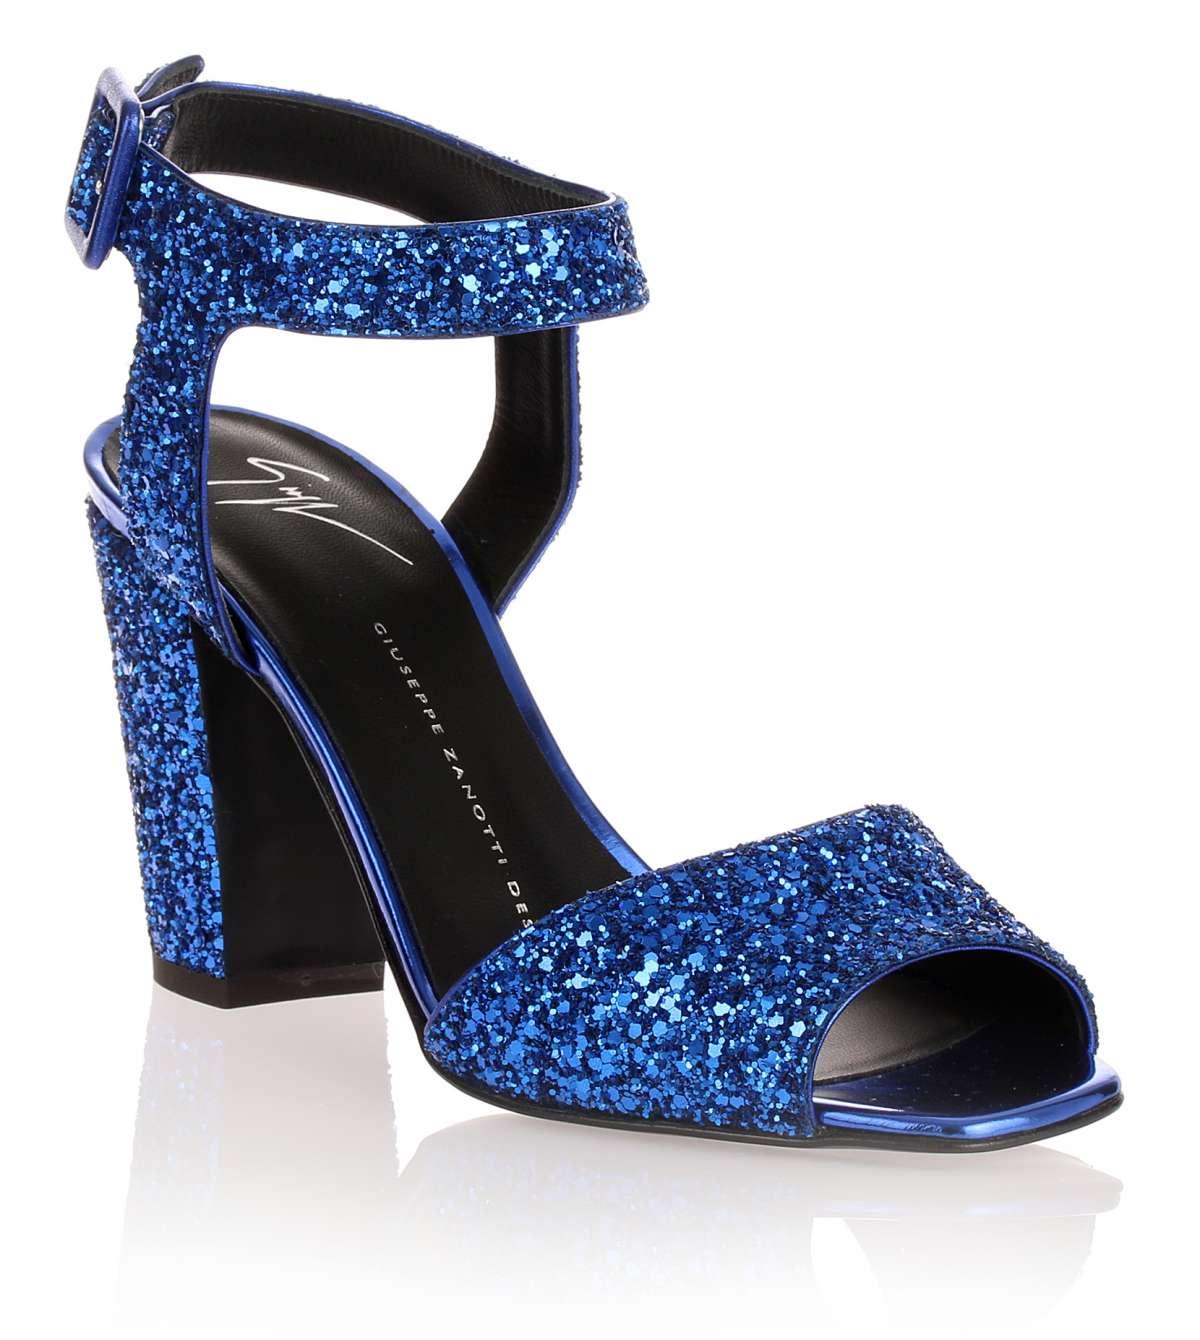 Lyst - Giuseppe Zanotti Electric Blue Glitter Sandal in Blue - Save 51%